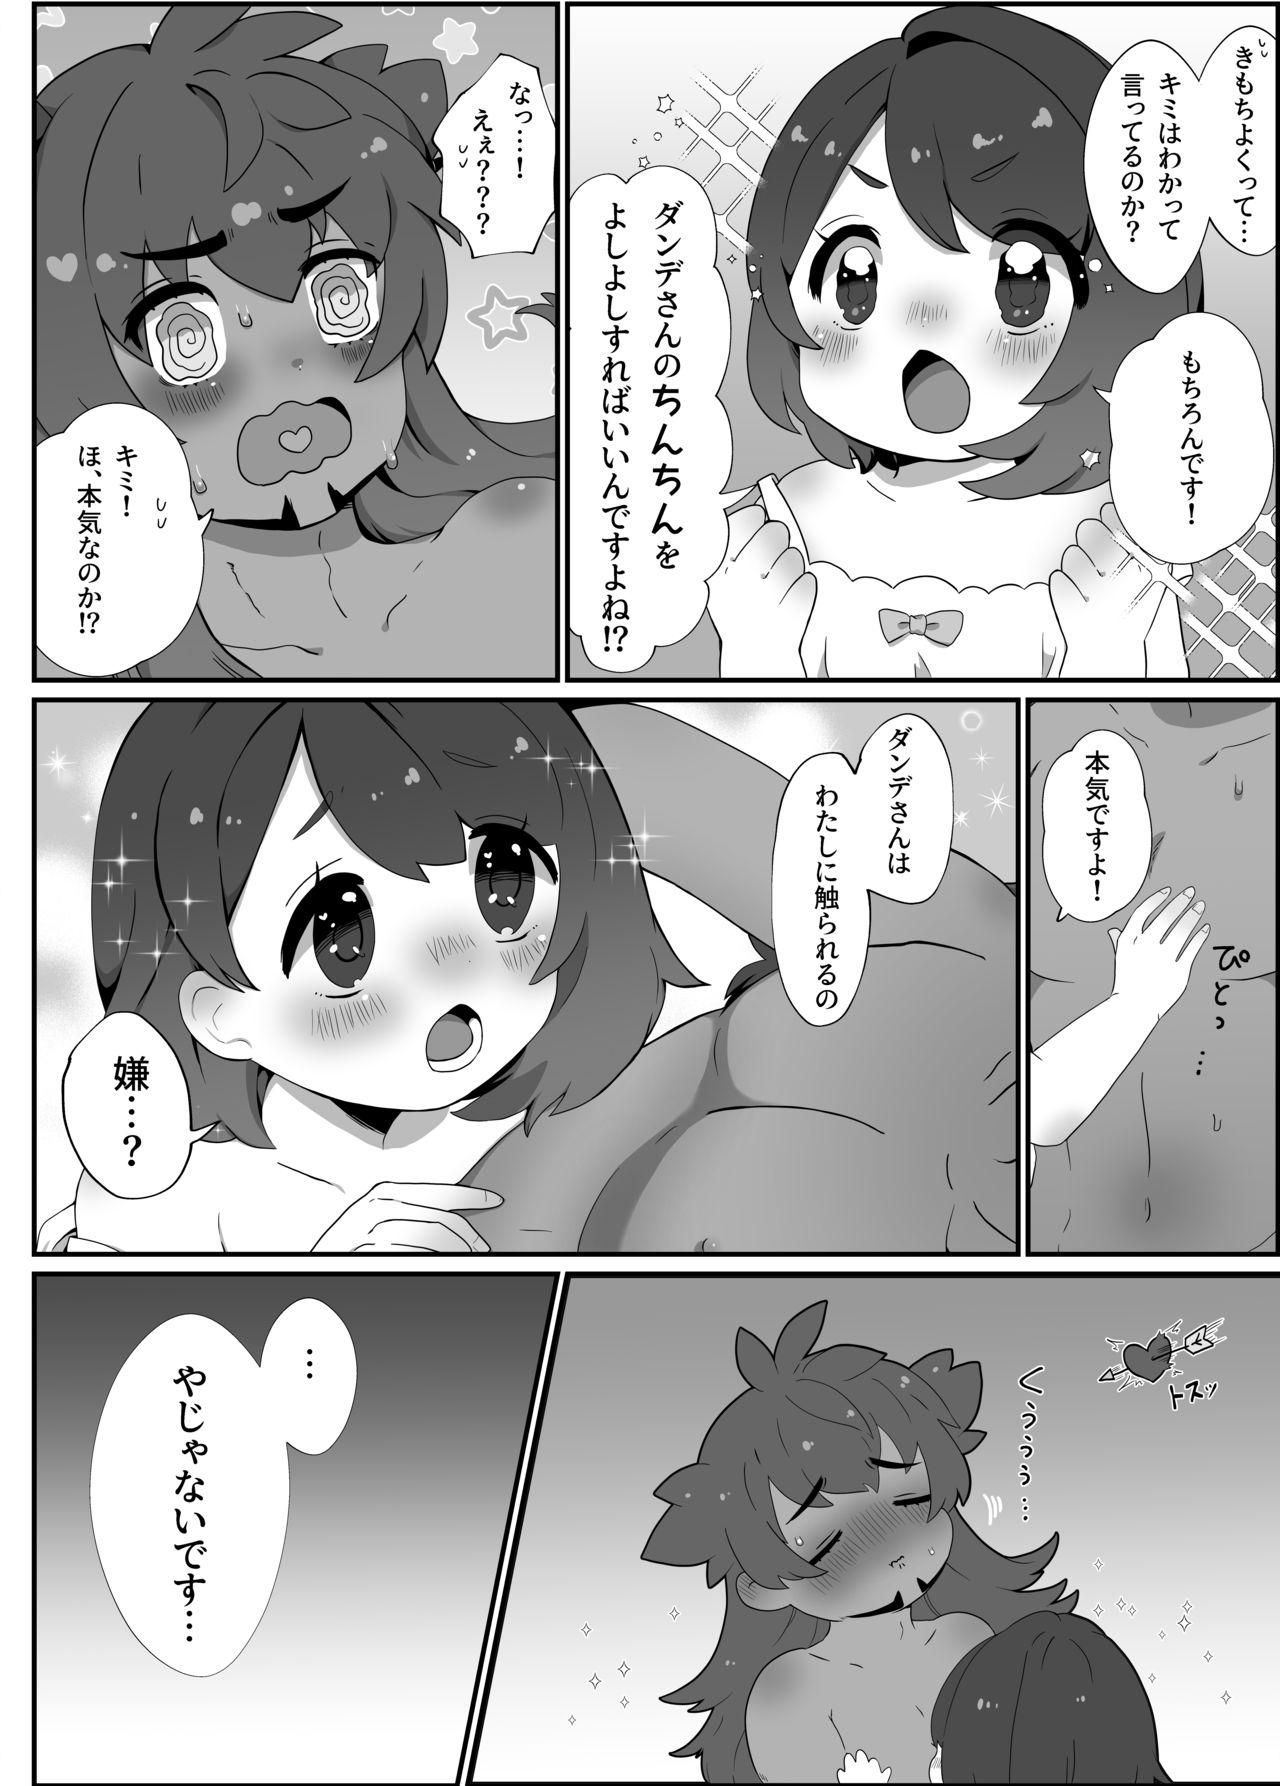 Skirt Daisukidakara Daijoubu! - Pokemon | pocket monsters 18 Porn - Page 5